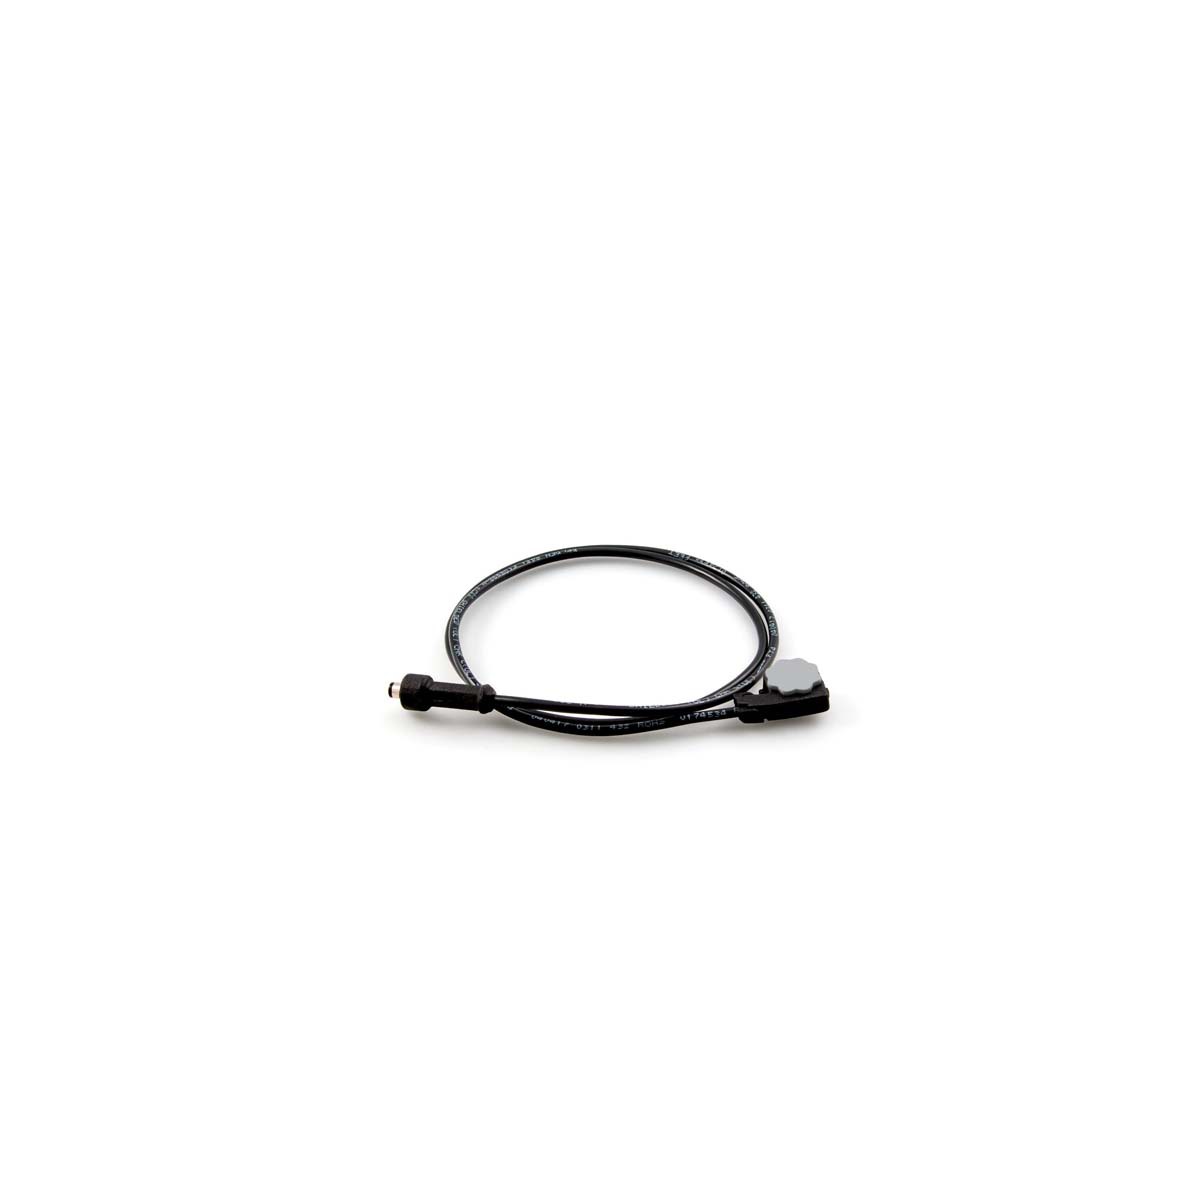 3M™ Speedglas™ Short Helmet Power Cable For G5-01 Welding Helmet